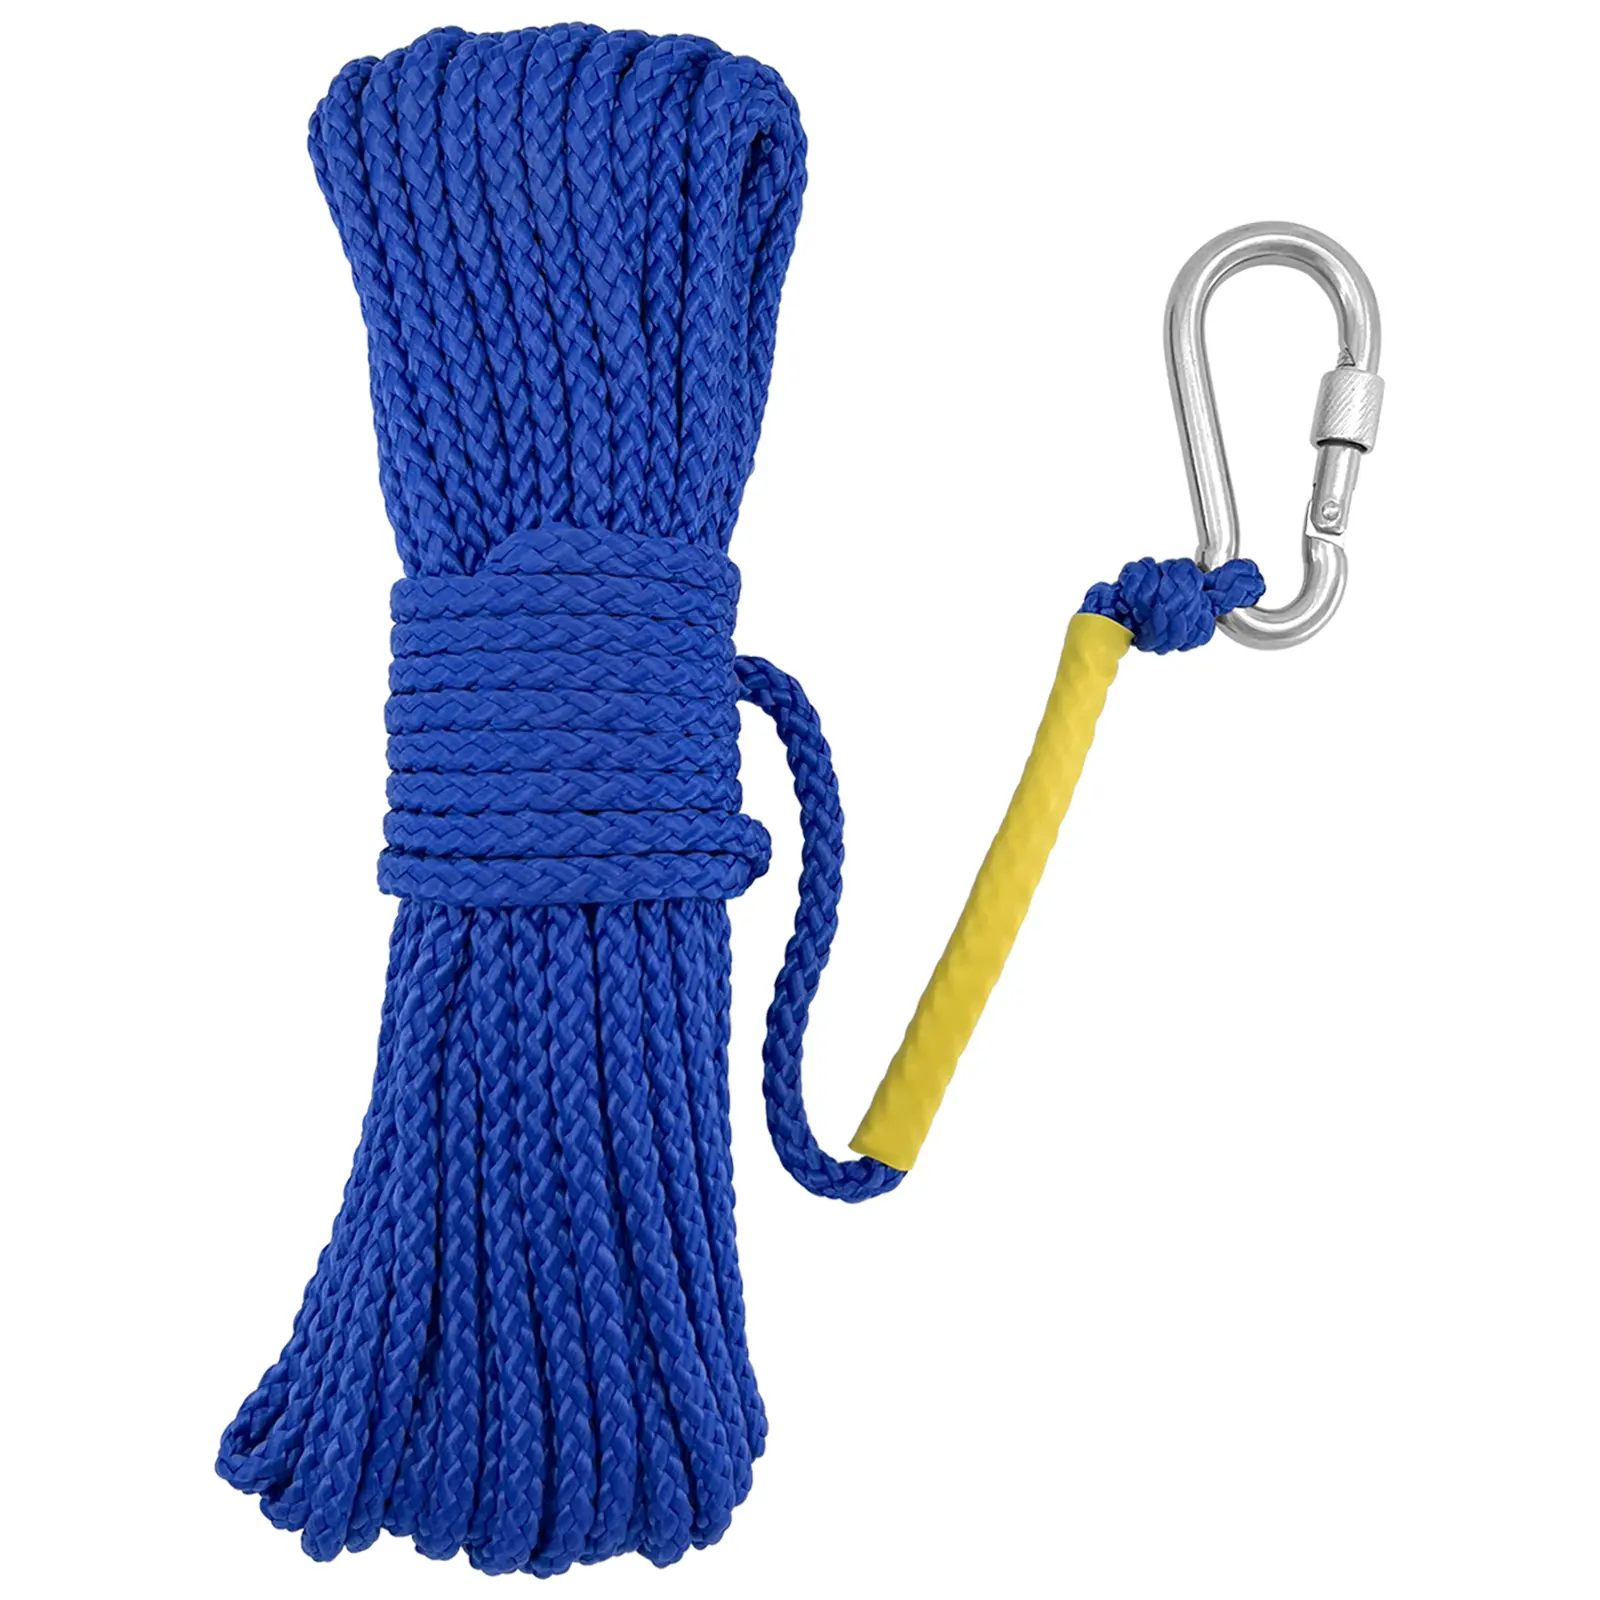 Cuerda de escalada profesional para montañismo, salvavidas marino, accesorios marinos, azul